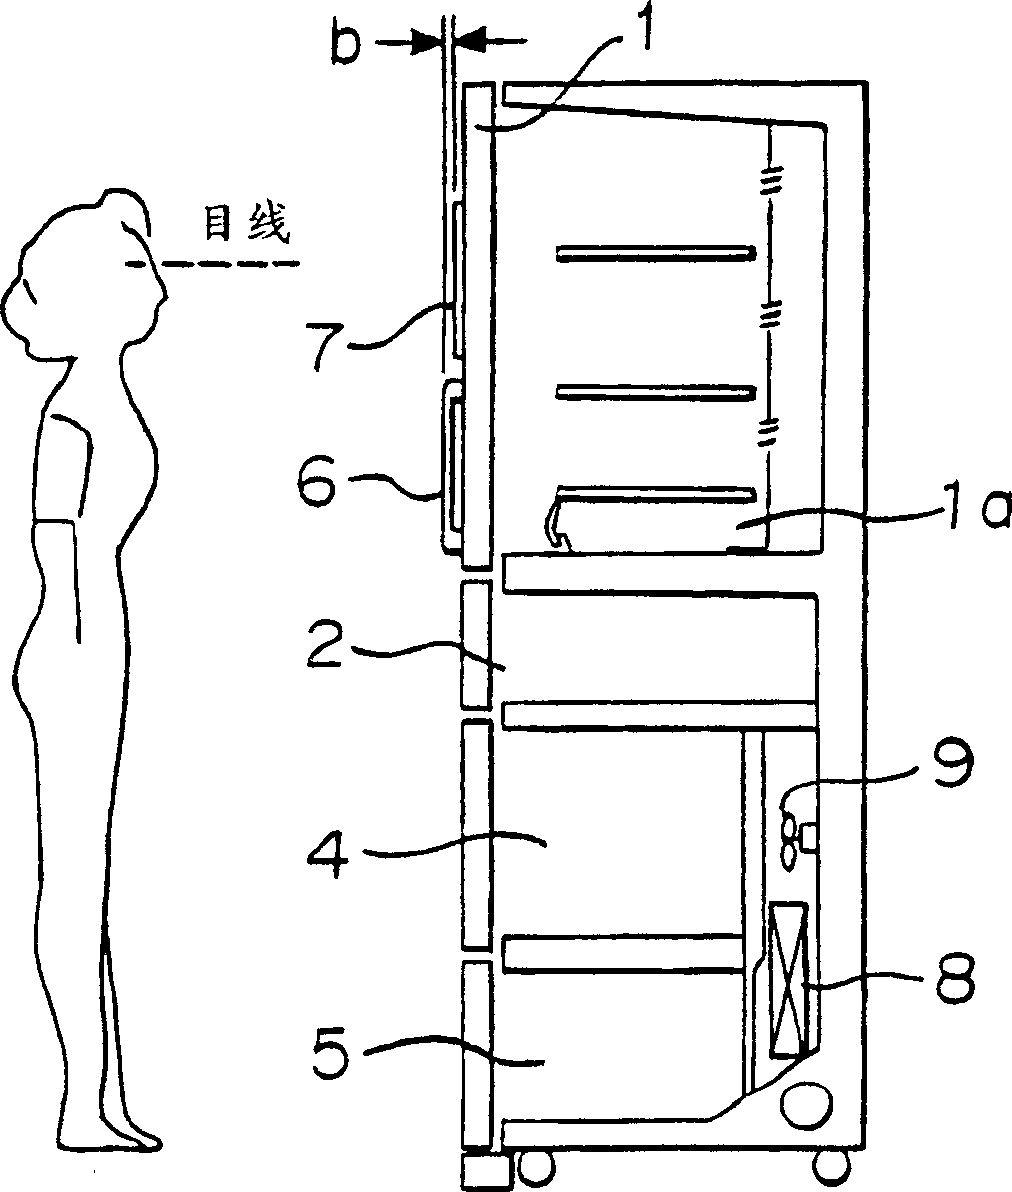 Refrigerator and method of operating refrigerator